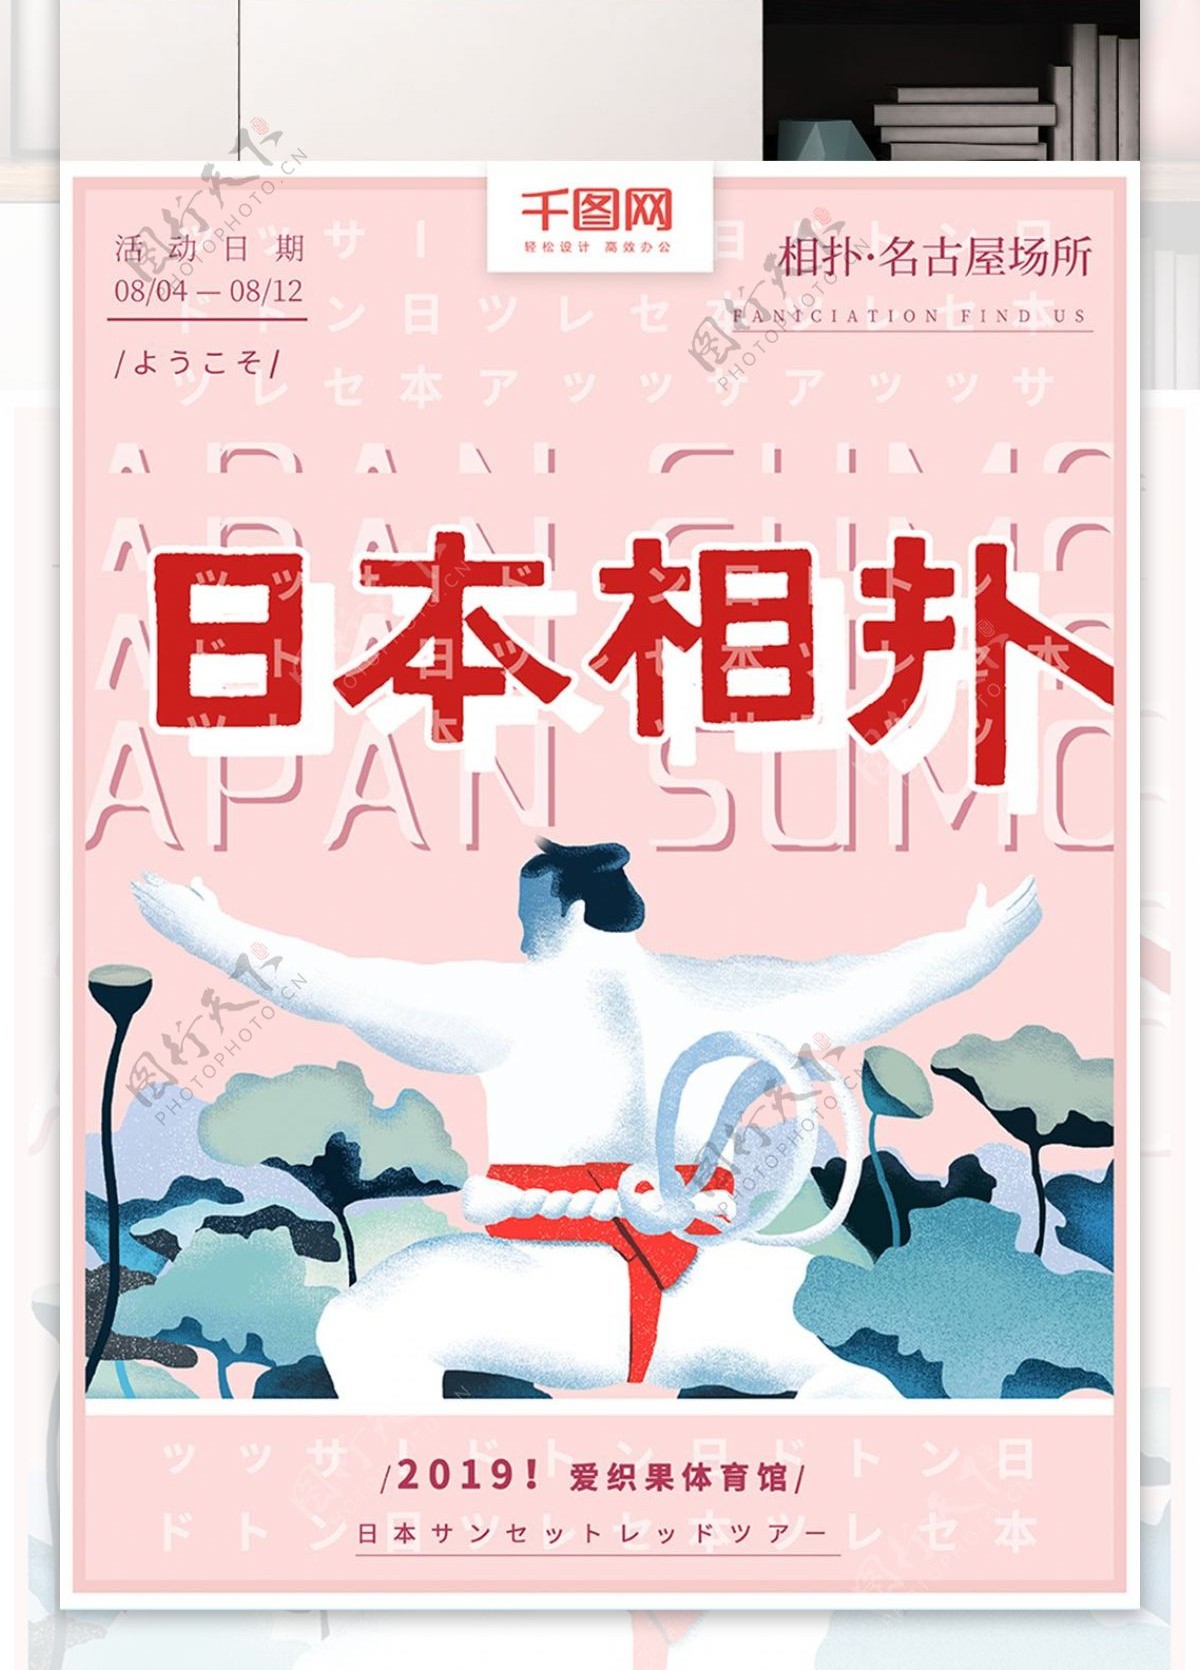 原创手绘日本旅游文化相扑宣传海报